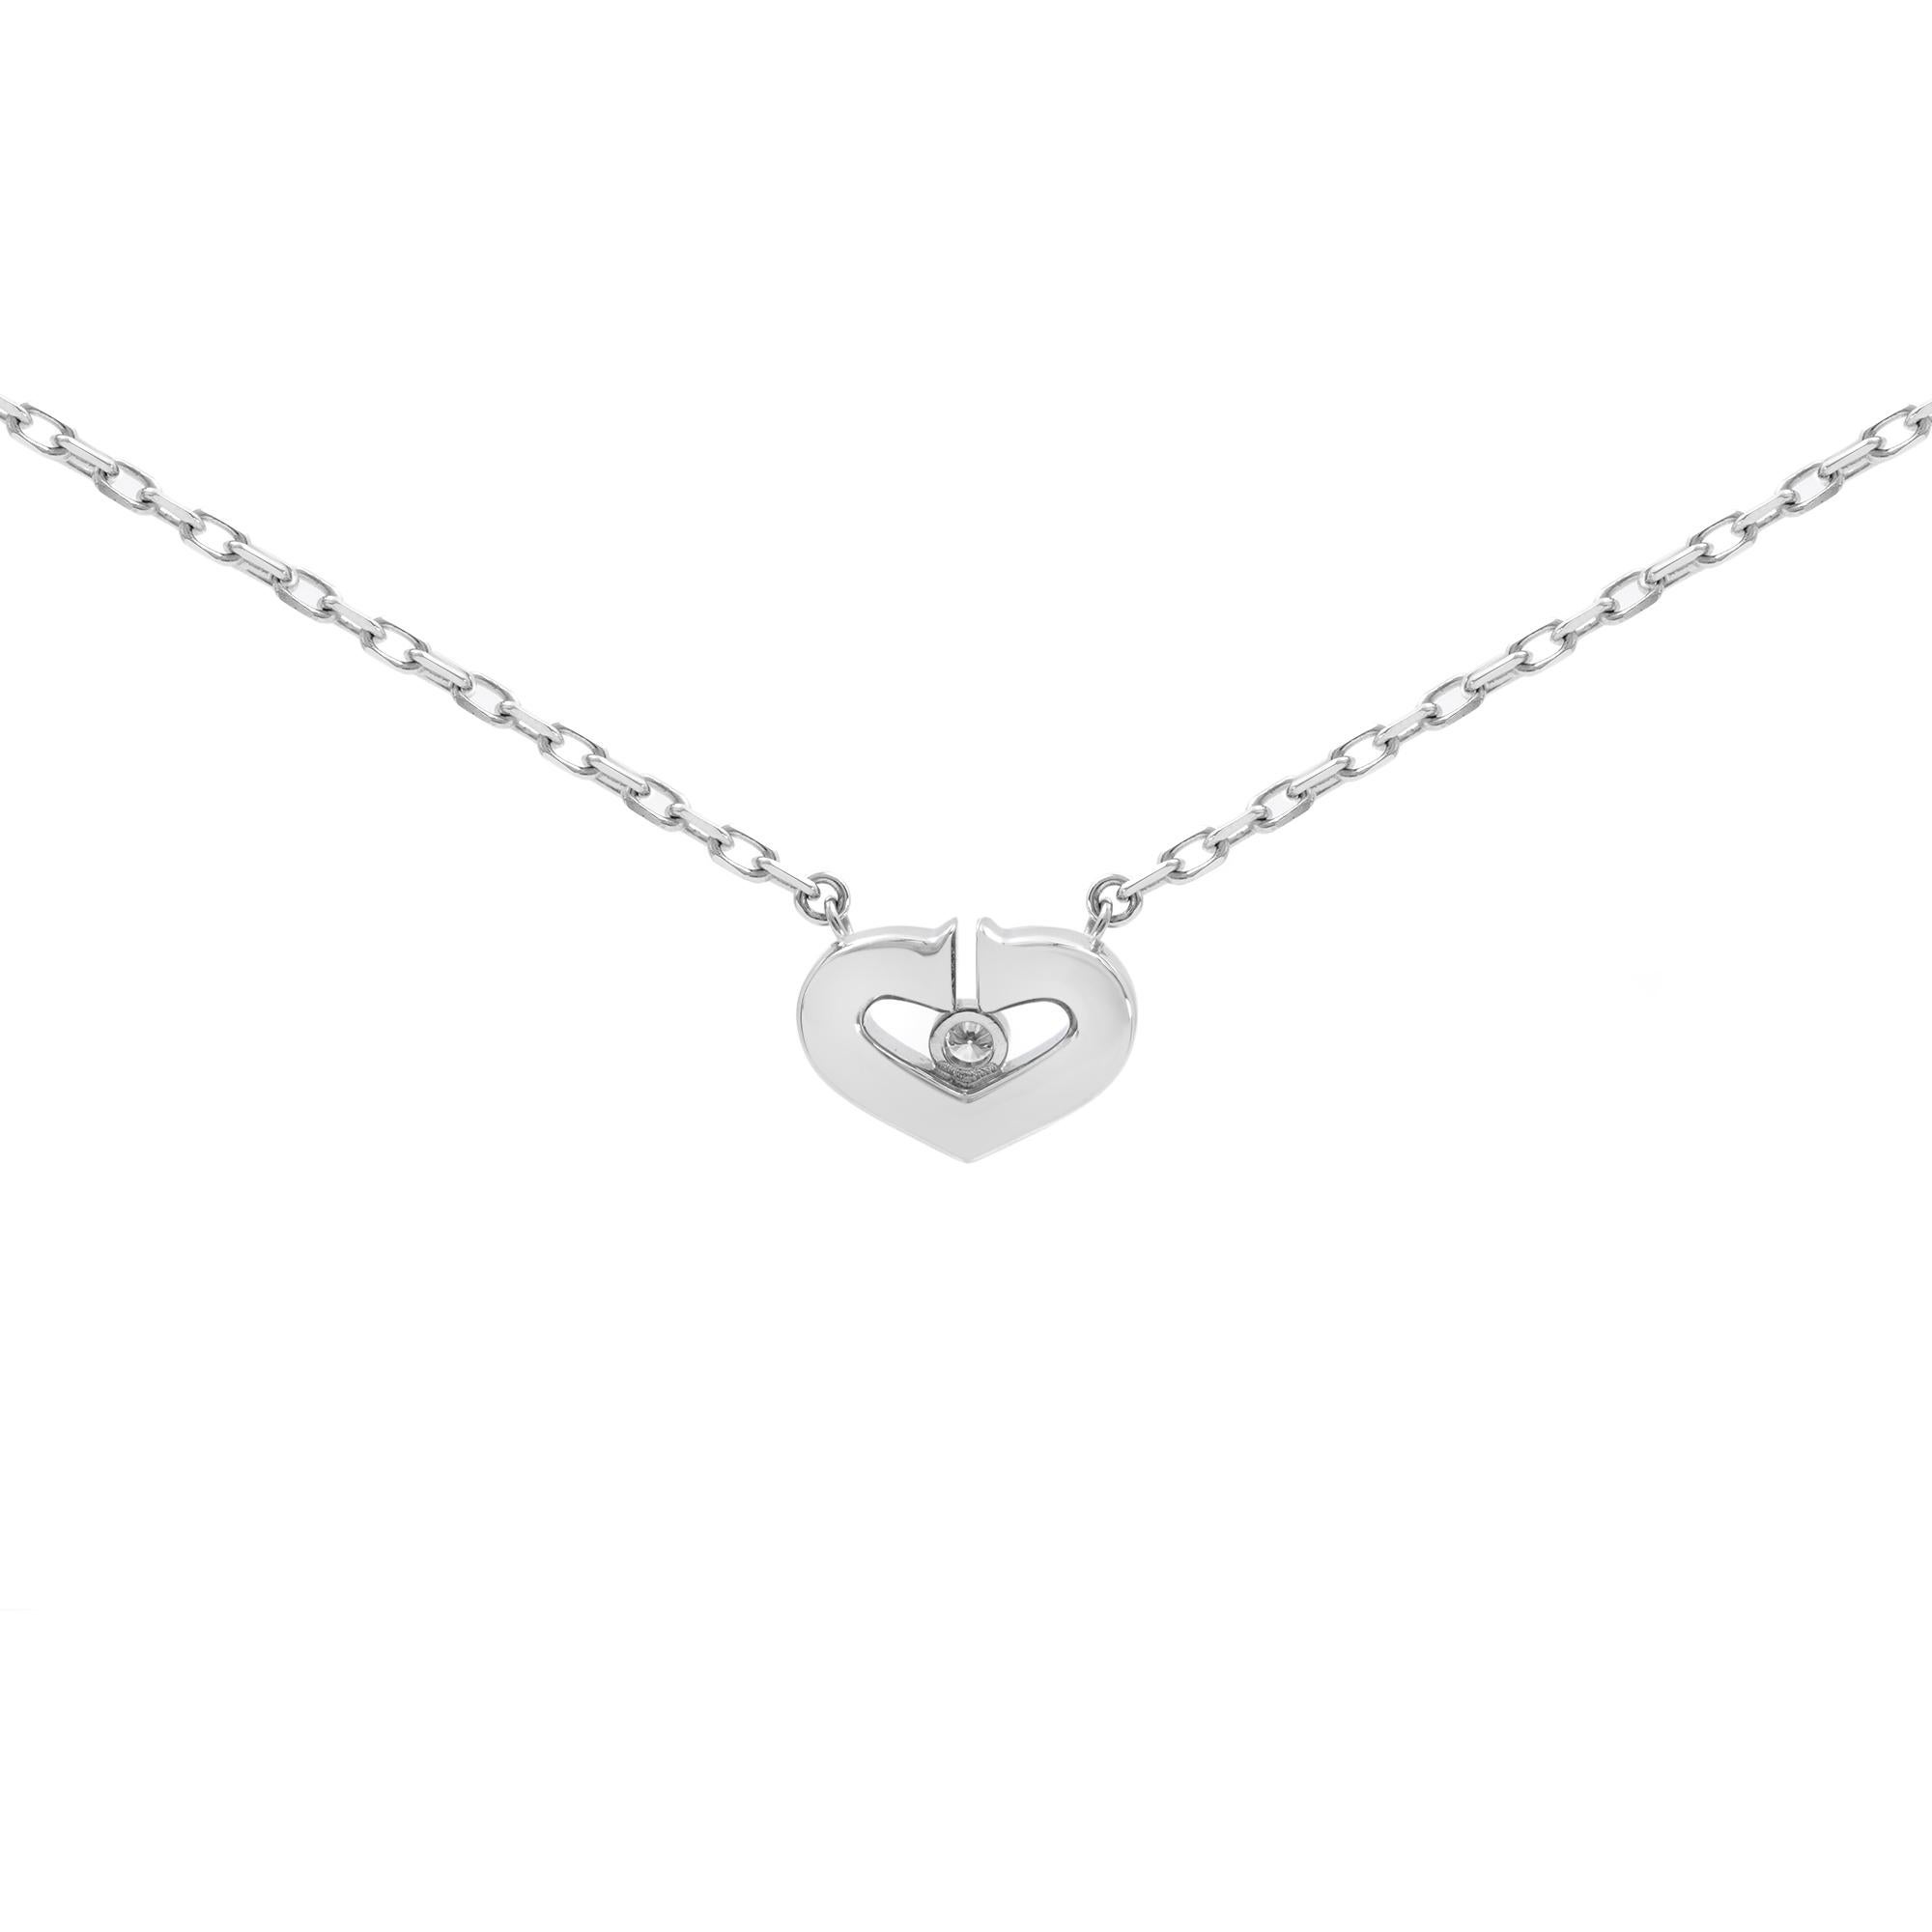 Round Cut Cartier C Heart Diamond Pendant Necklace 18k White Gold 0.02cttw